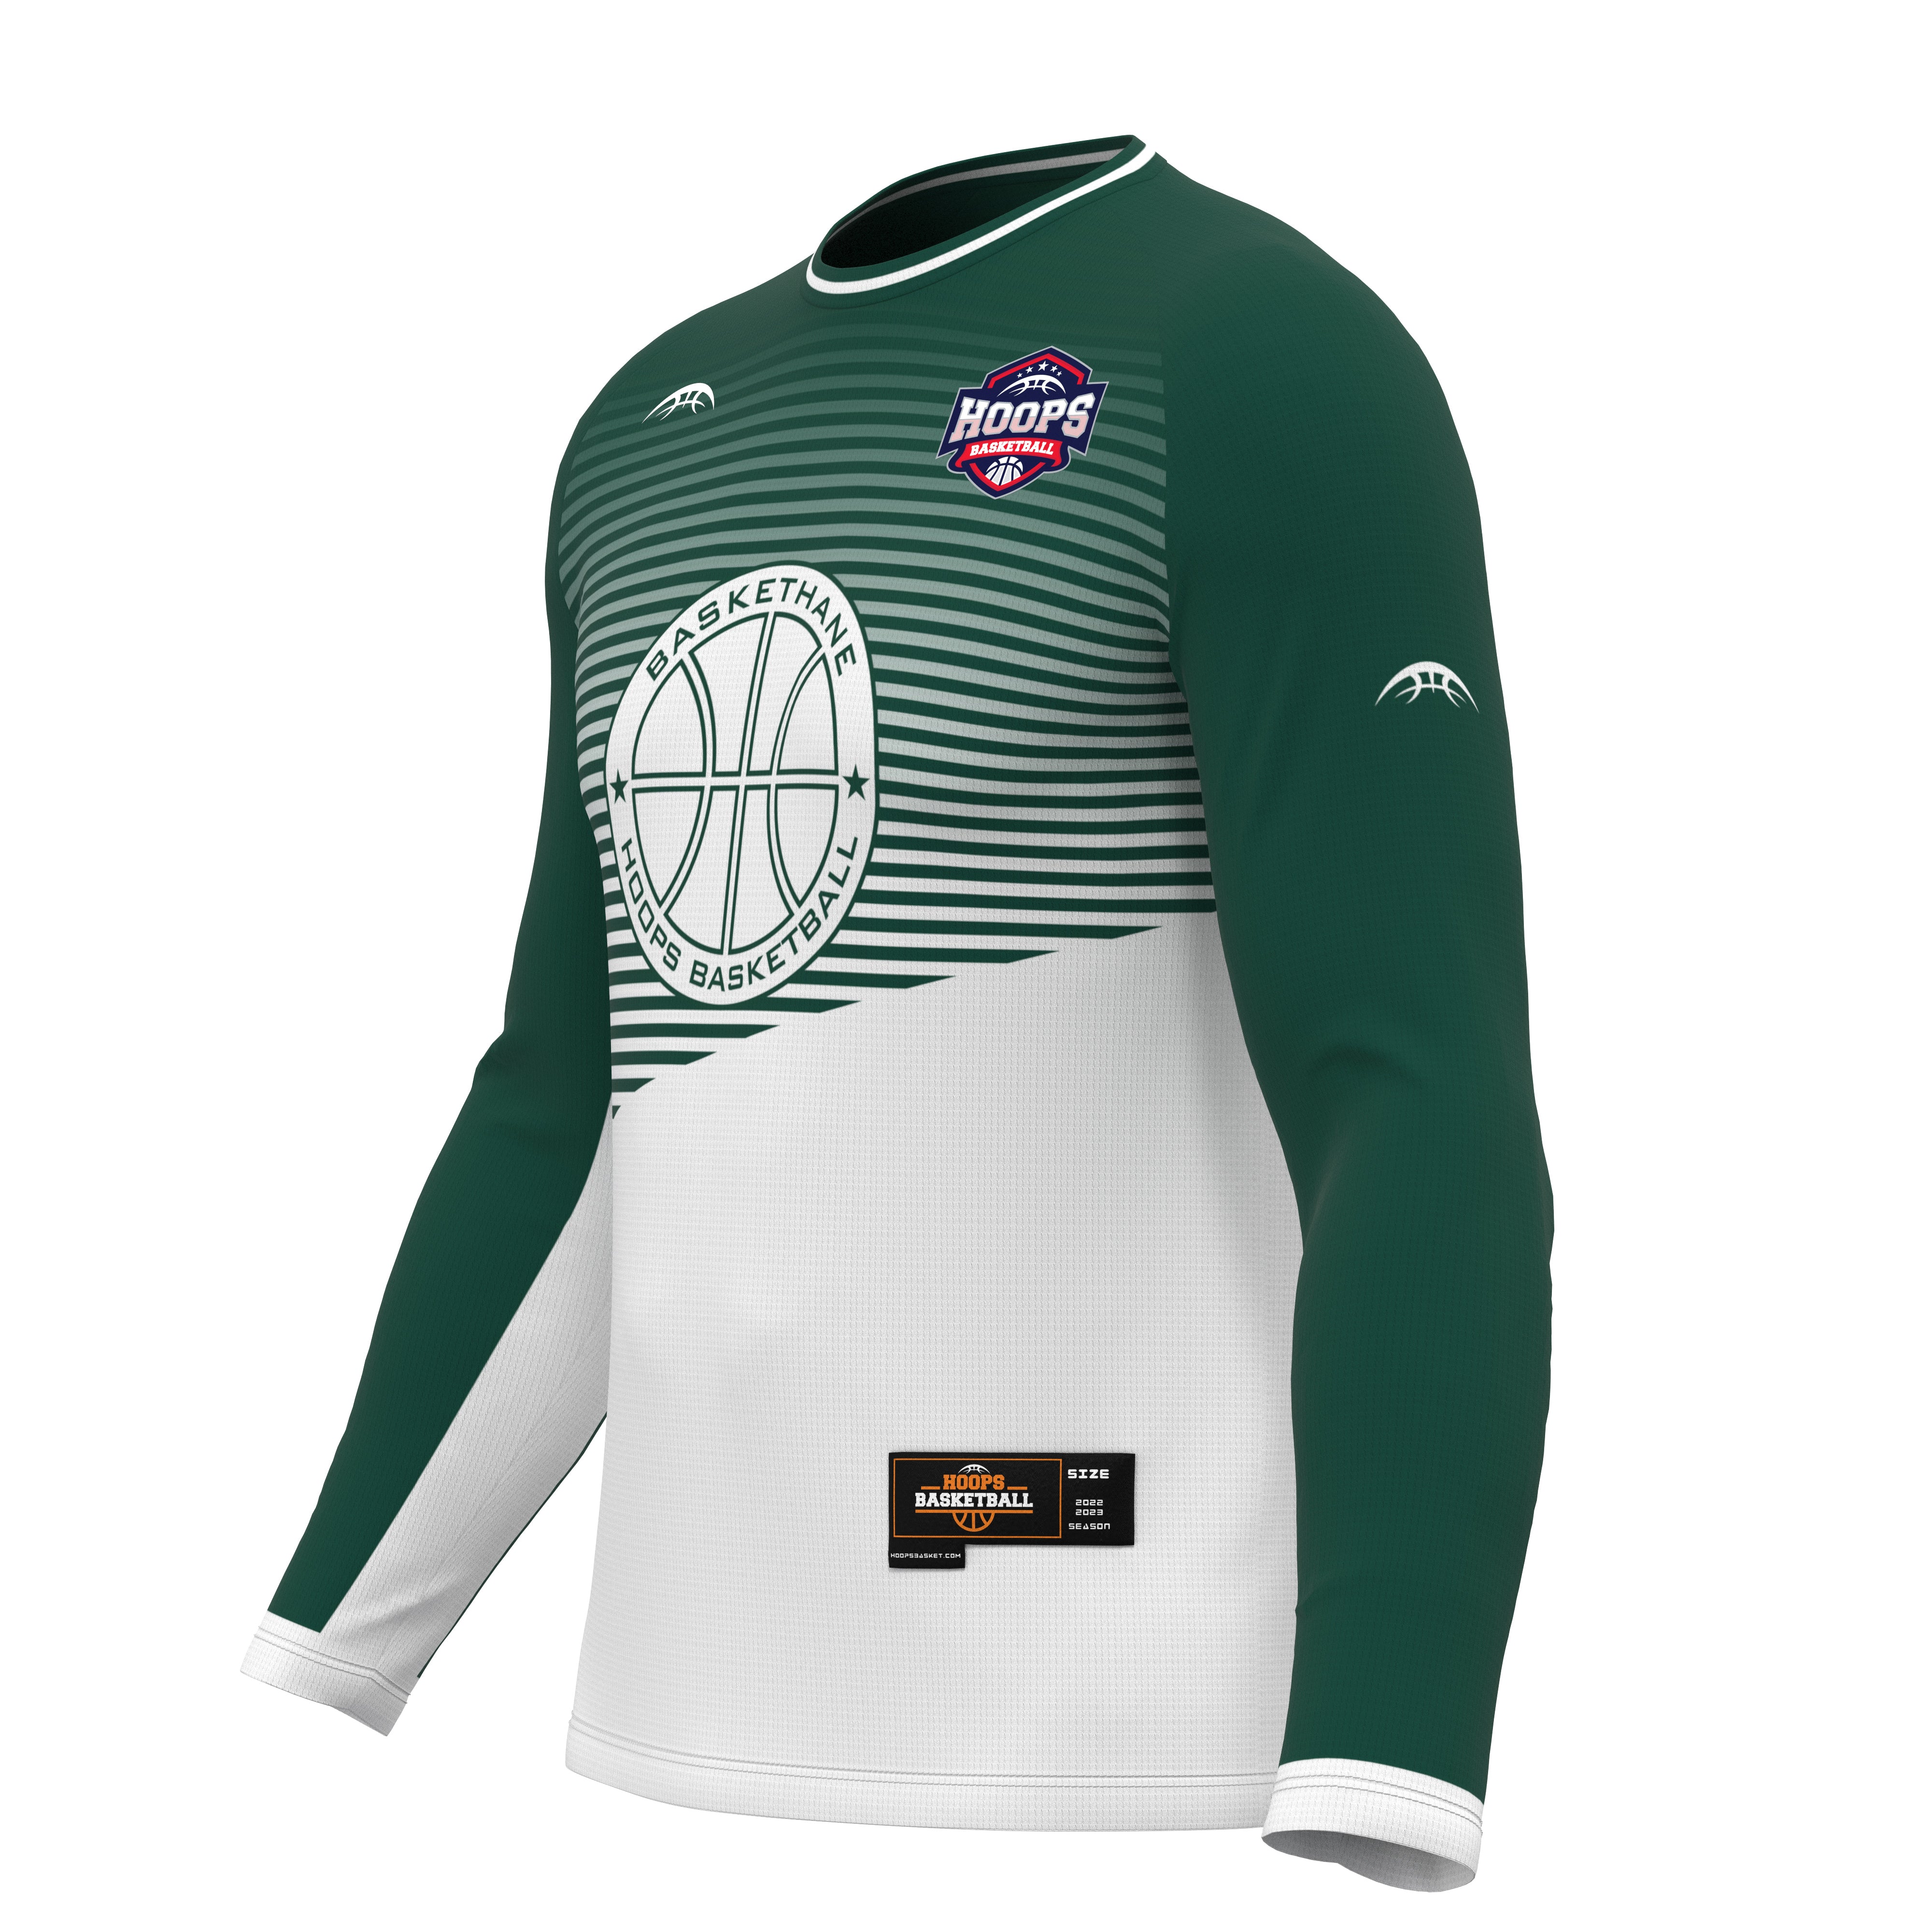 Basketball Shooting Shirts - Custom Shooting Shirts